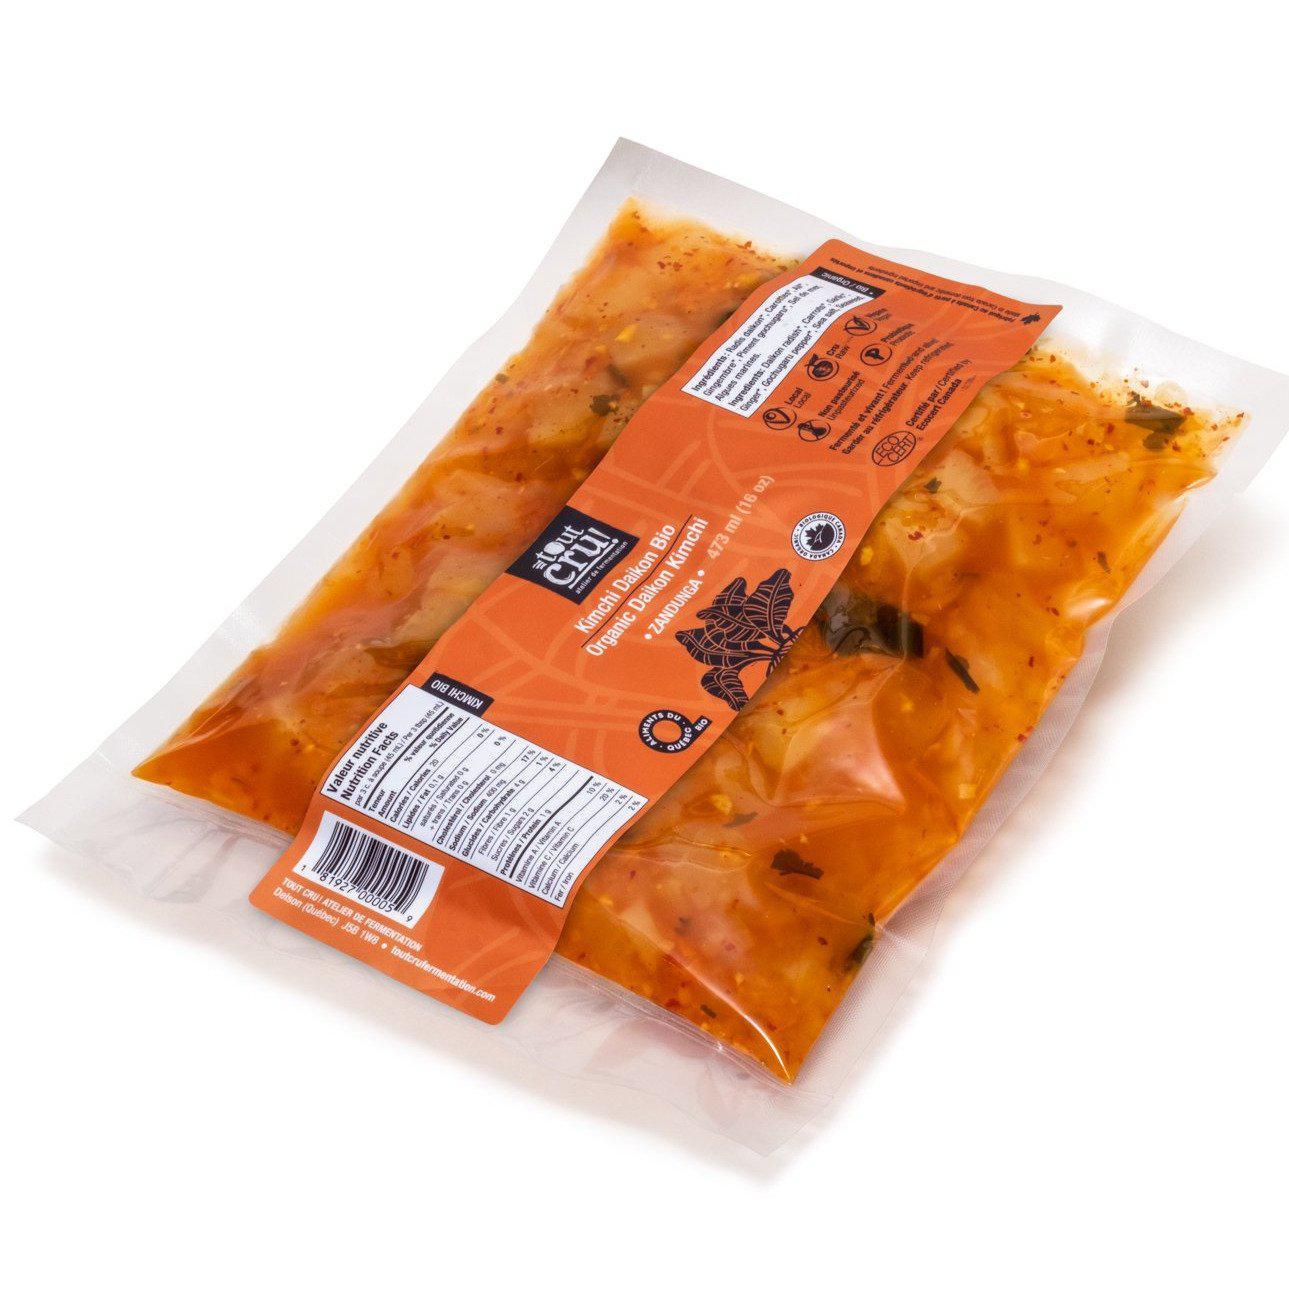 Organic daikon kimchi - Zandunga - Tout cru! Fermentation